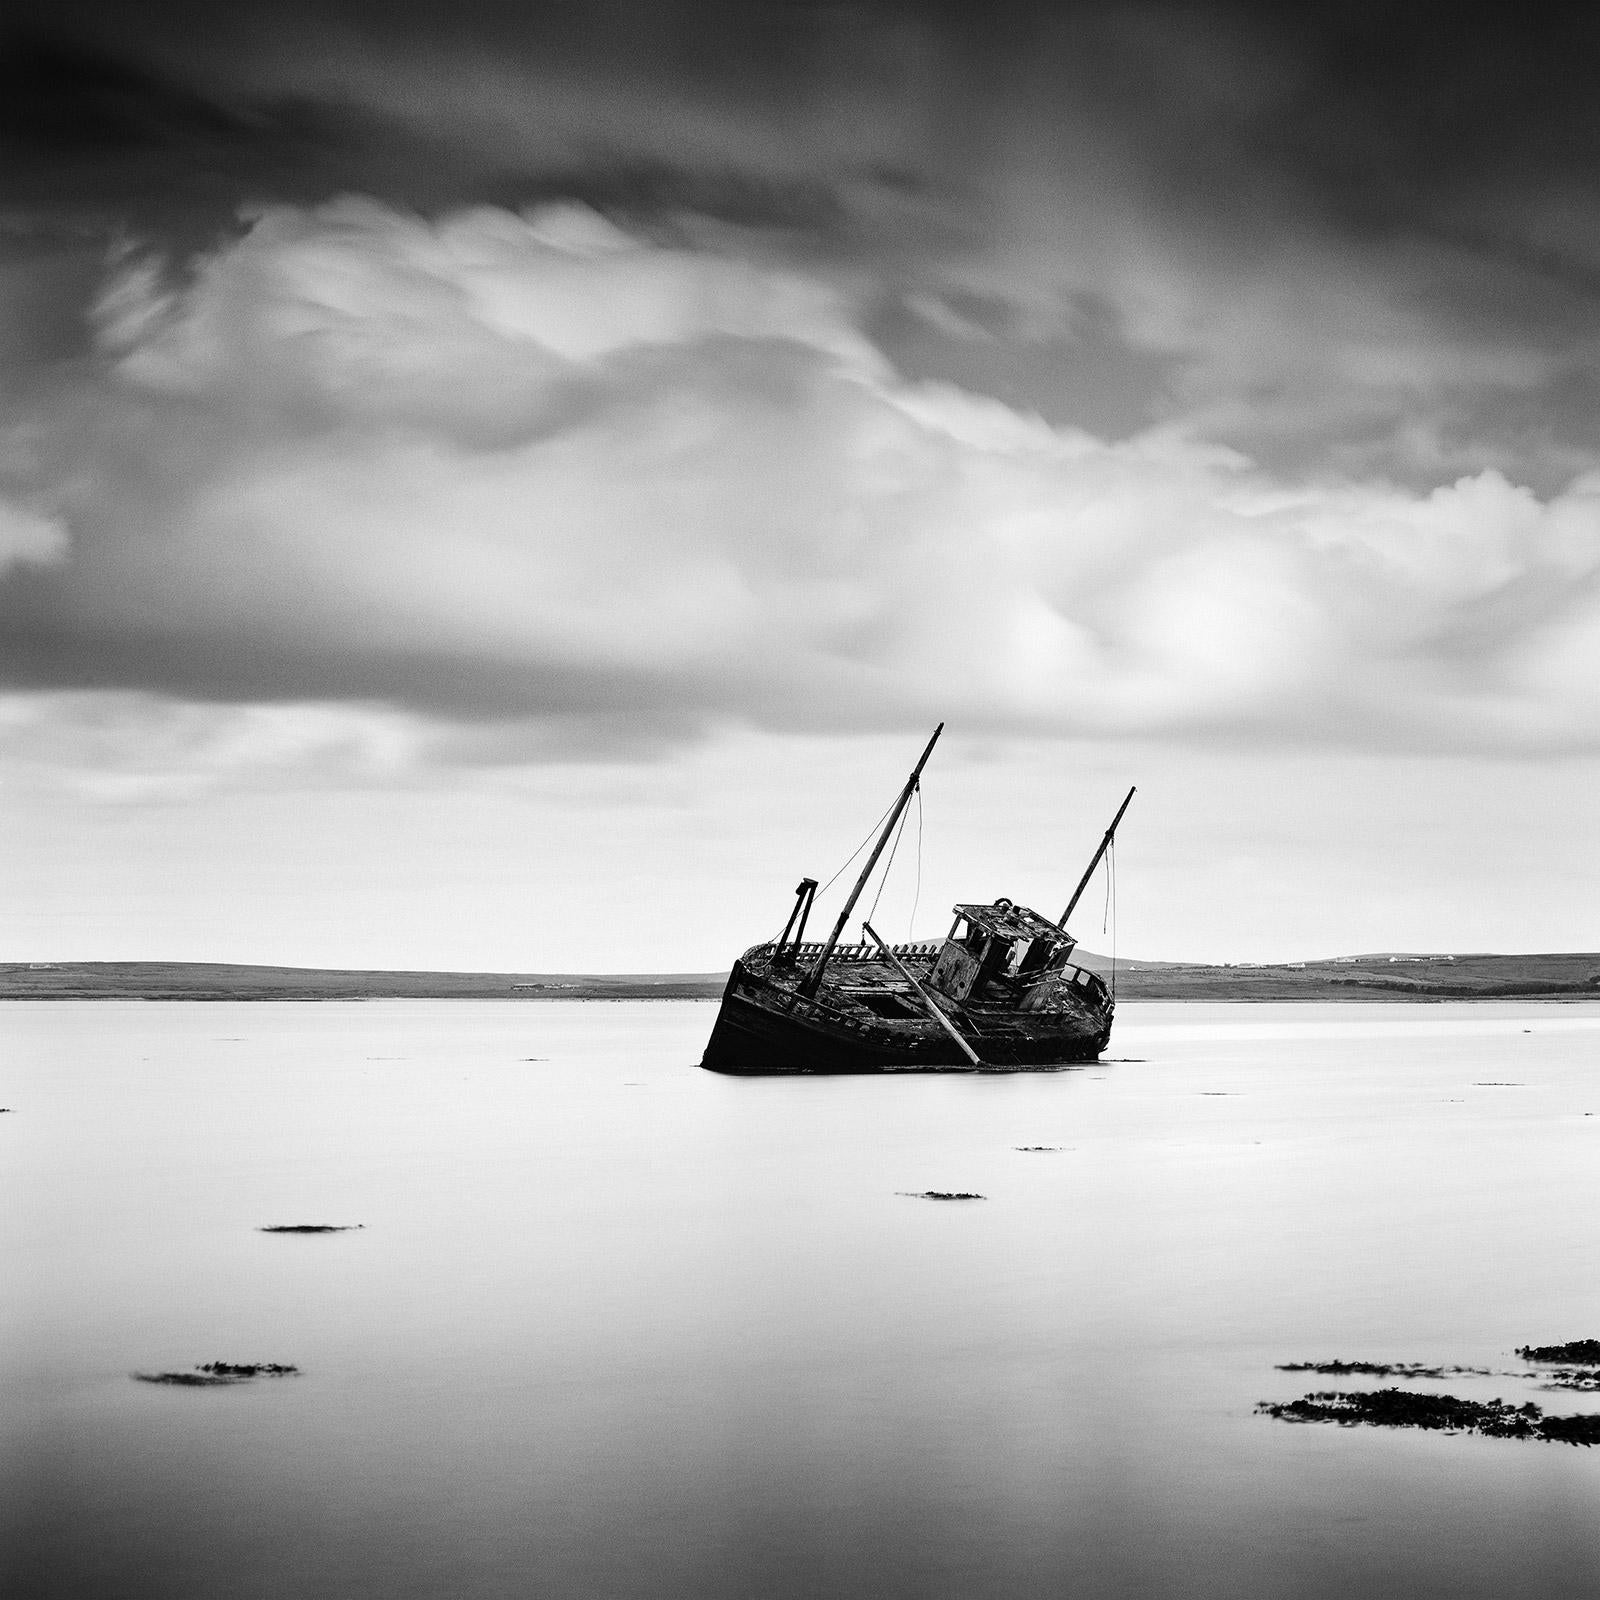 Bateau de pêche échoué, plage, Irlande, photographie noir et blanc, paysage